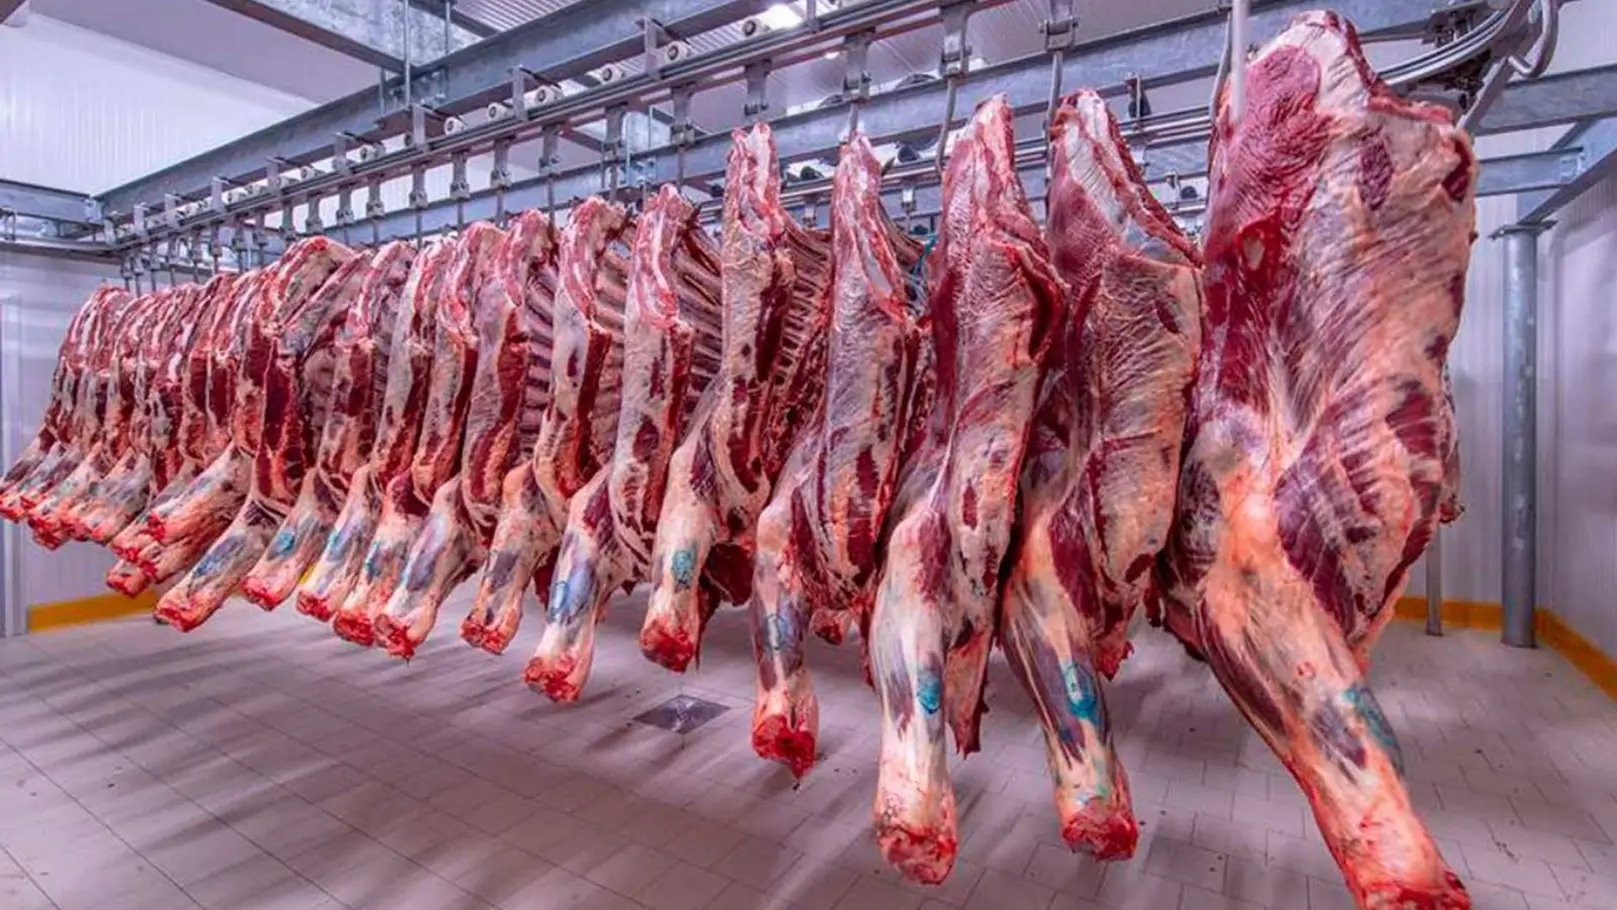 هبوط تاريخي في أسعار اللحوم